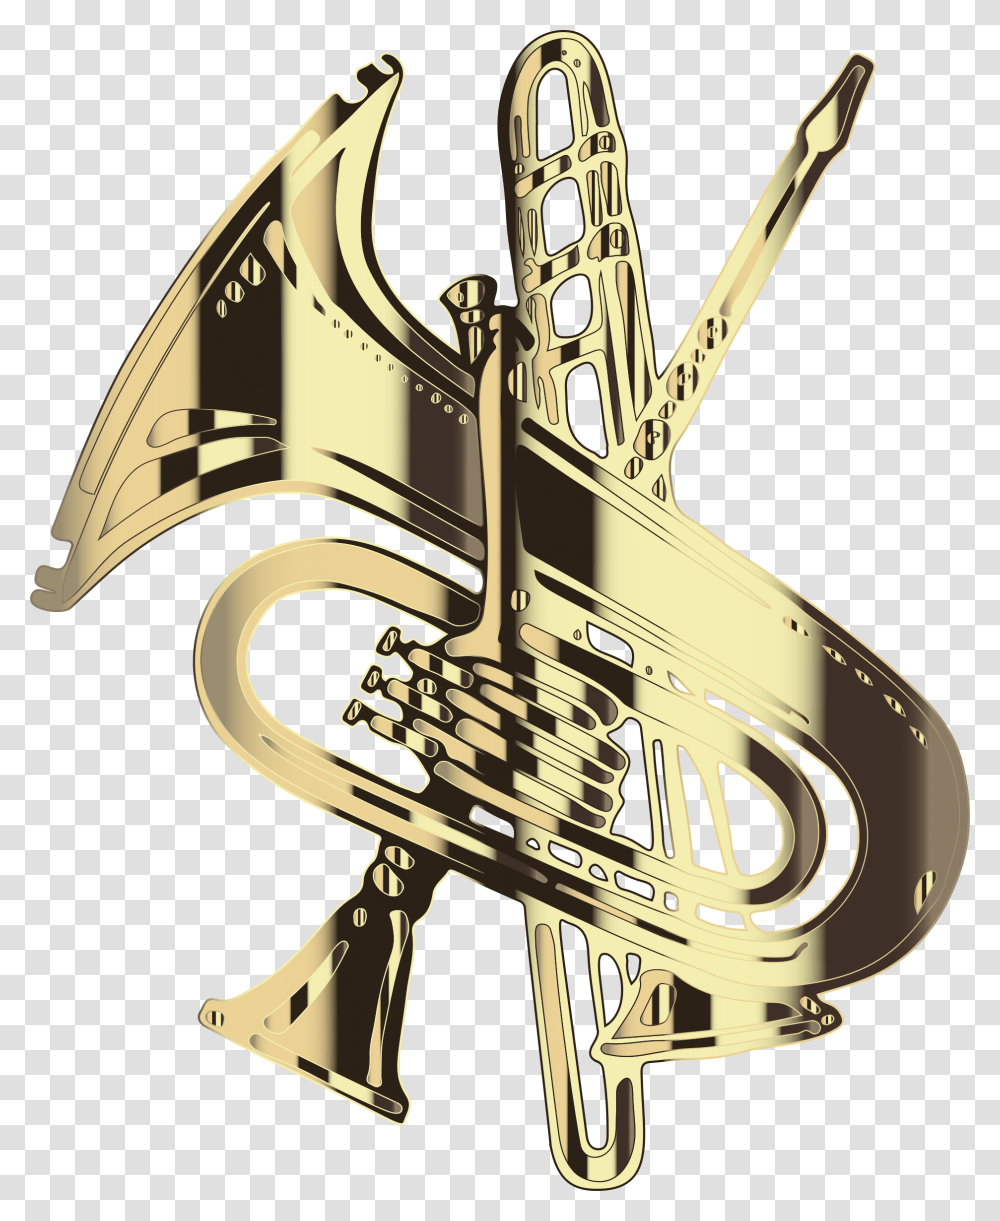 Mellophonemetalbrass Instrument Emblem, Horn, Brass Section, Musical Instrument, Tuba Transparent Png